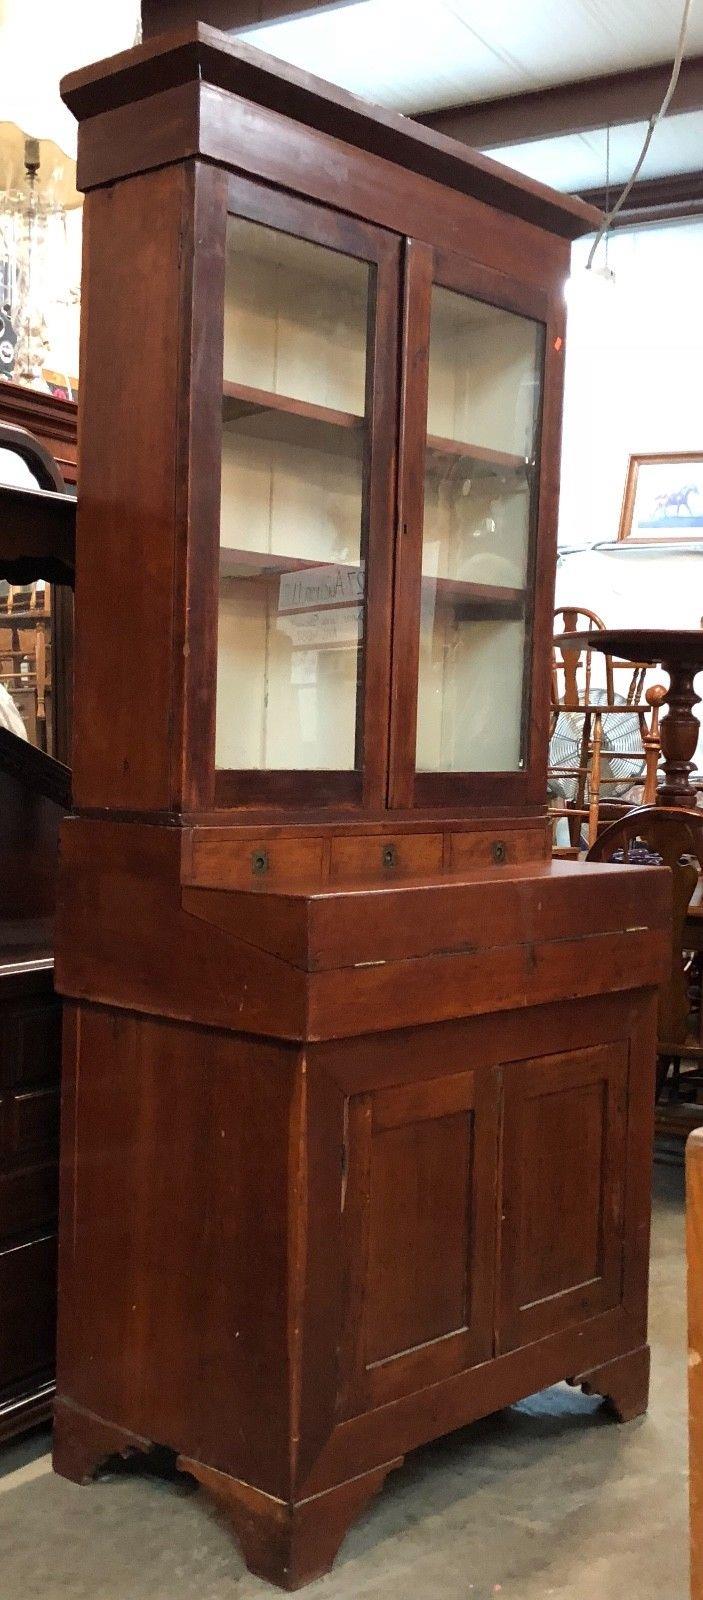 Kentucky Cherry Butler’s Desk, Circa 1830, Many Hidden Storage Compartments